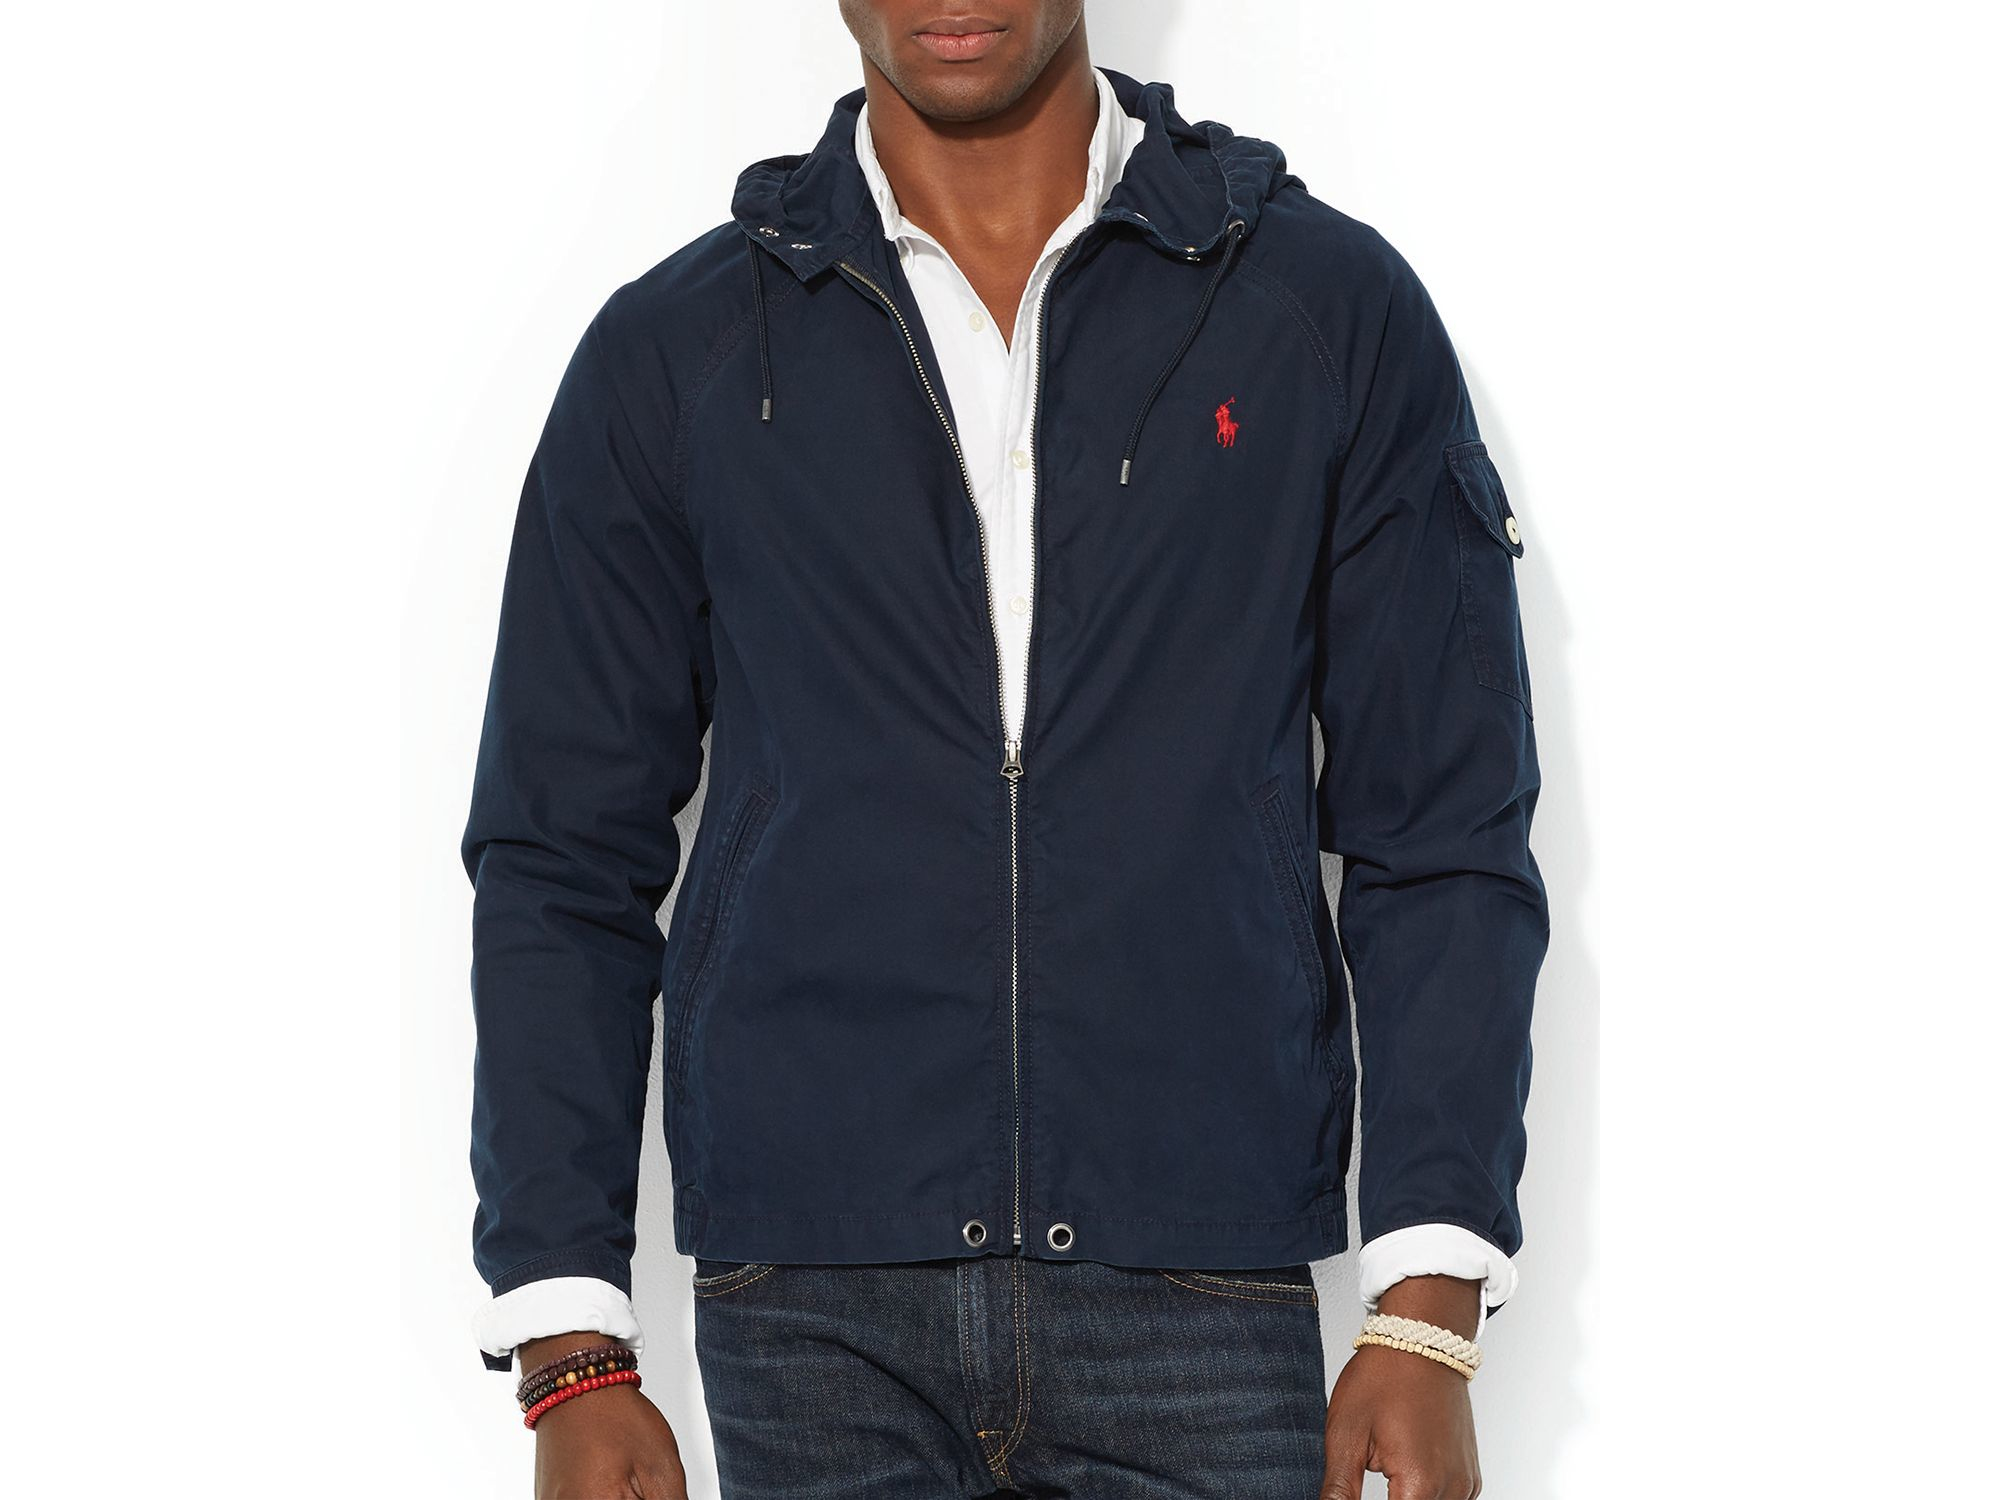 polo windbreaker jacket with hood